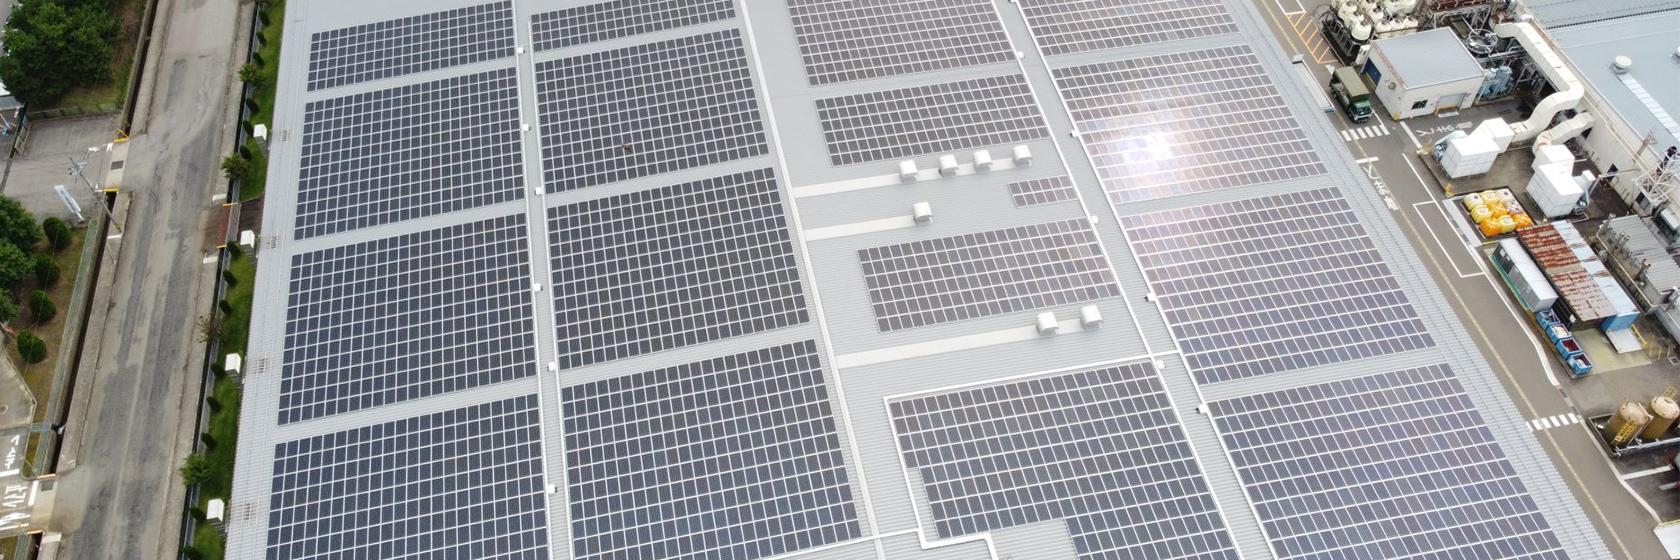 设置于厂房屋顶的太阳能板。通过积极节能和创能技术，力争在2050年实现碳中和